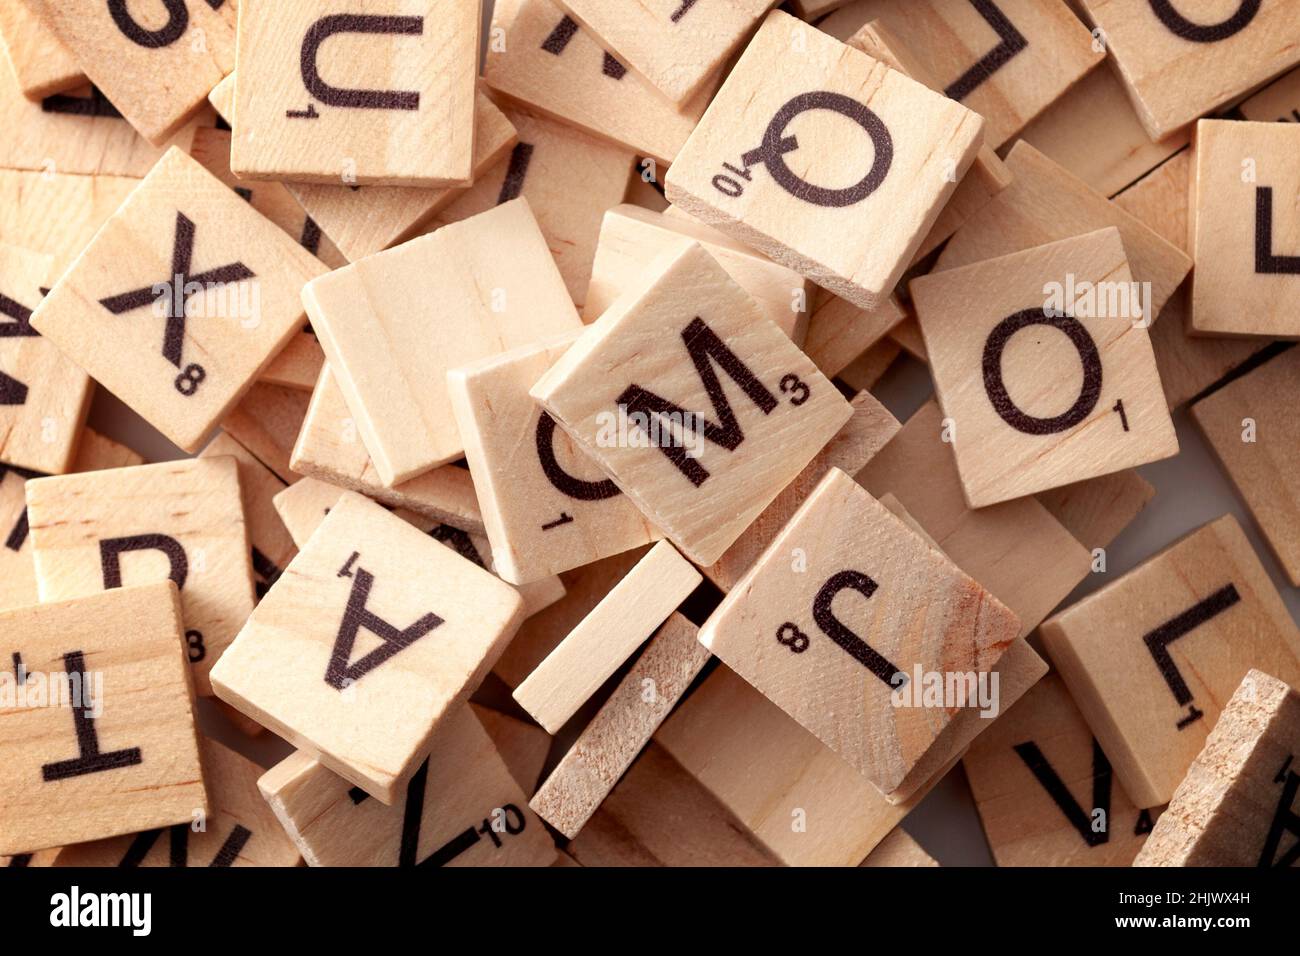 Gioco educativo, brainteaser e tema di concetto di gioco da tavolo con diverse piastrelle di legno con lettere e numeri utilizzati per scrivere le parole nei giochi di parole Foto Stock